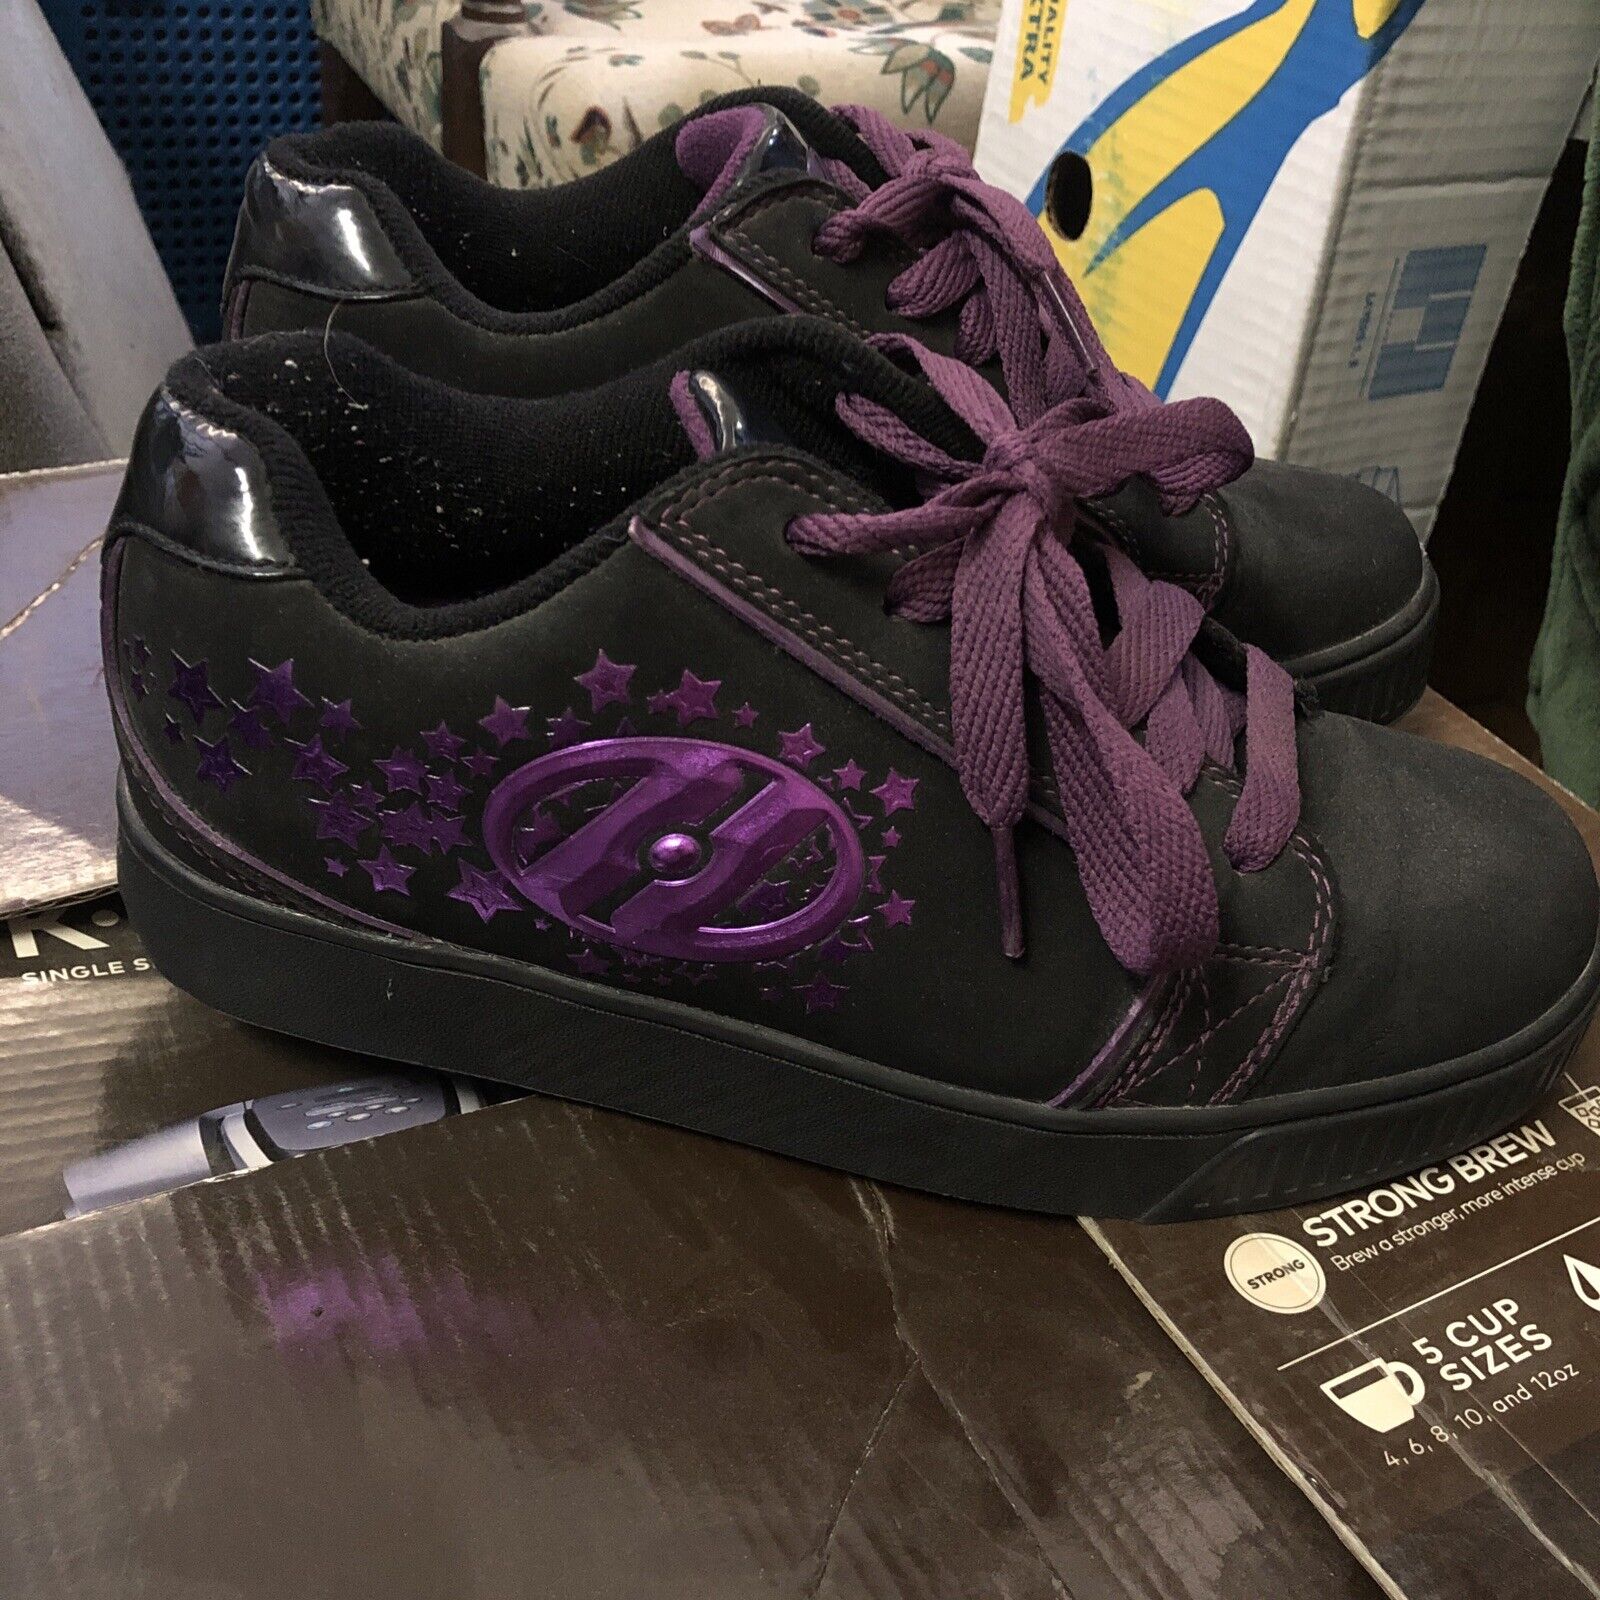 Heelys Women’s Sz 6 Black/ Purple